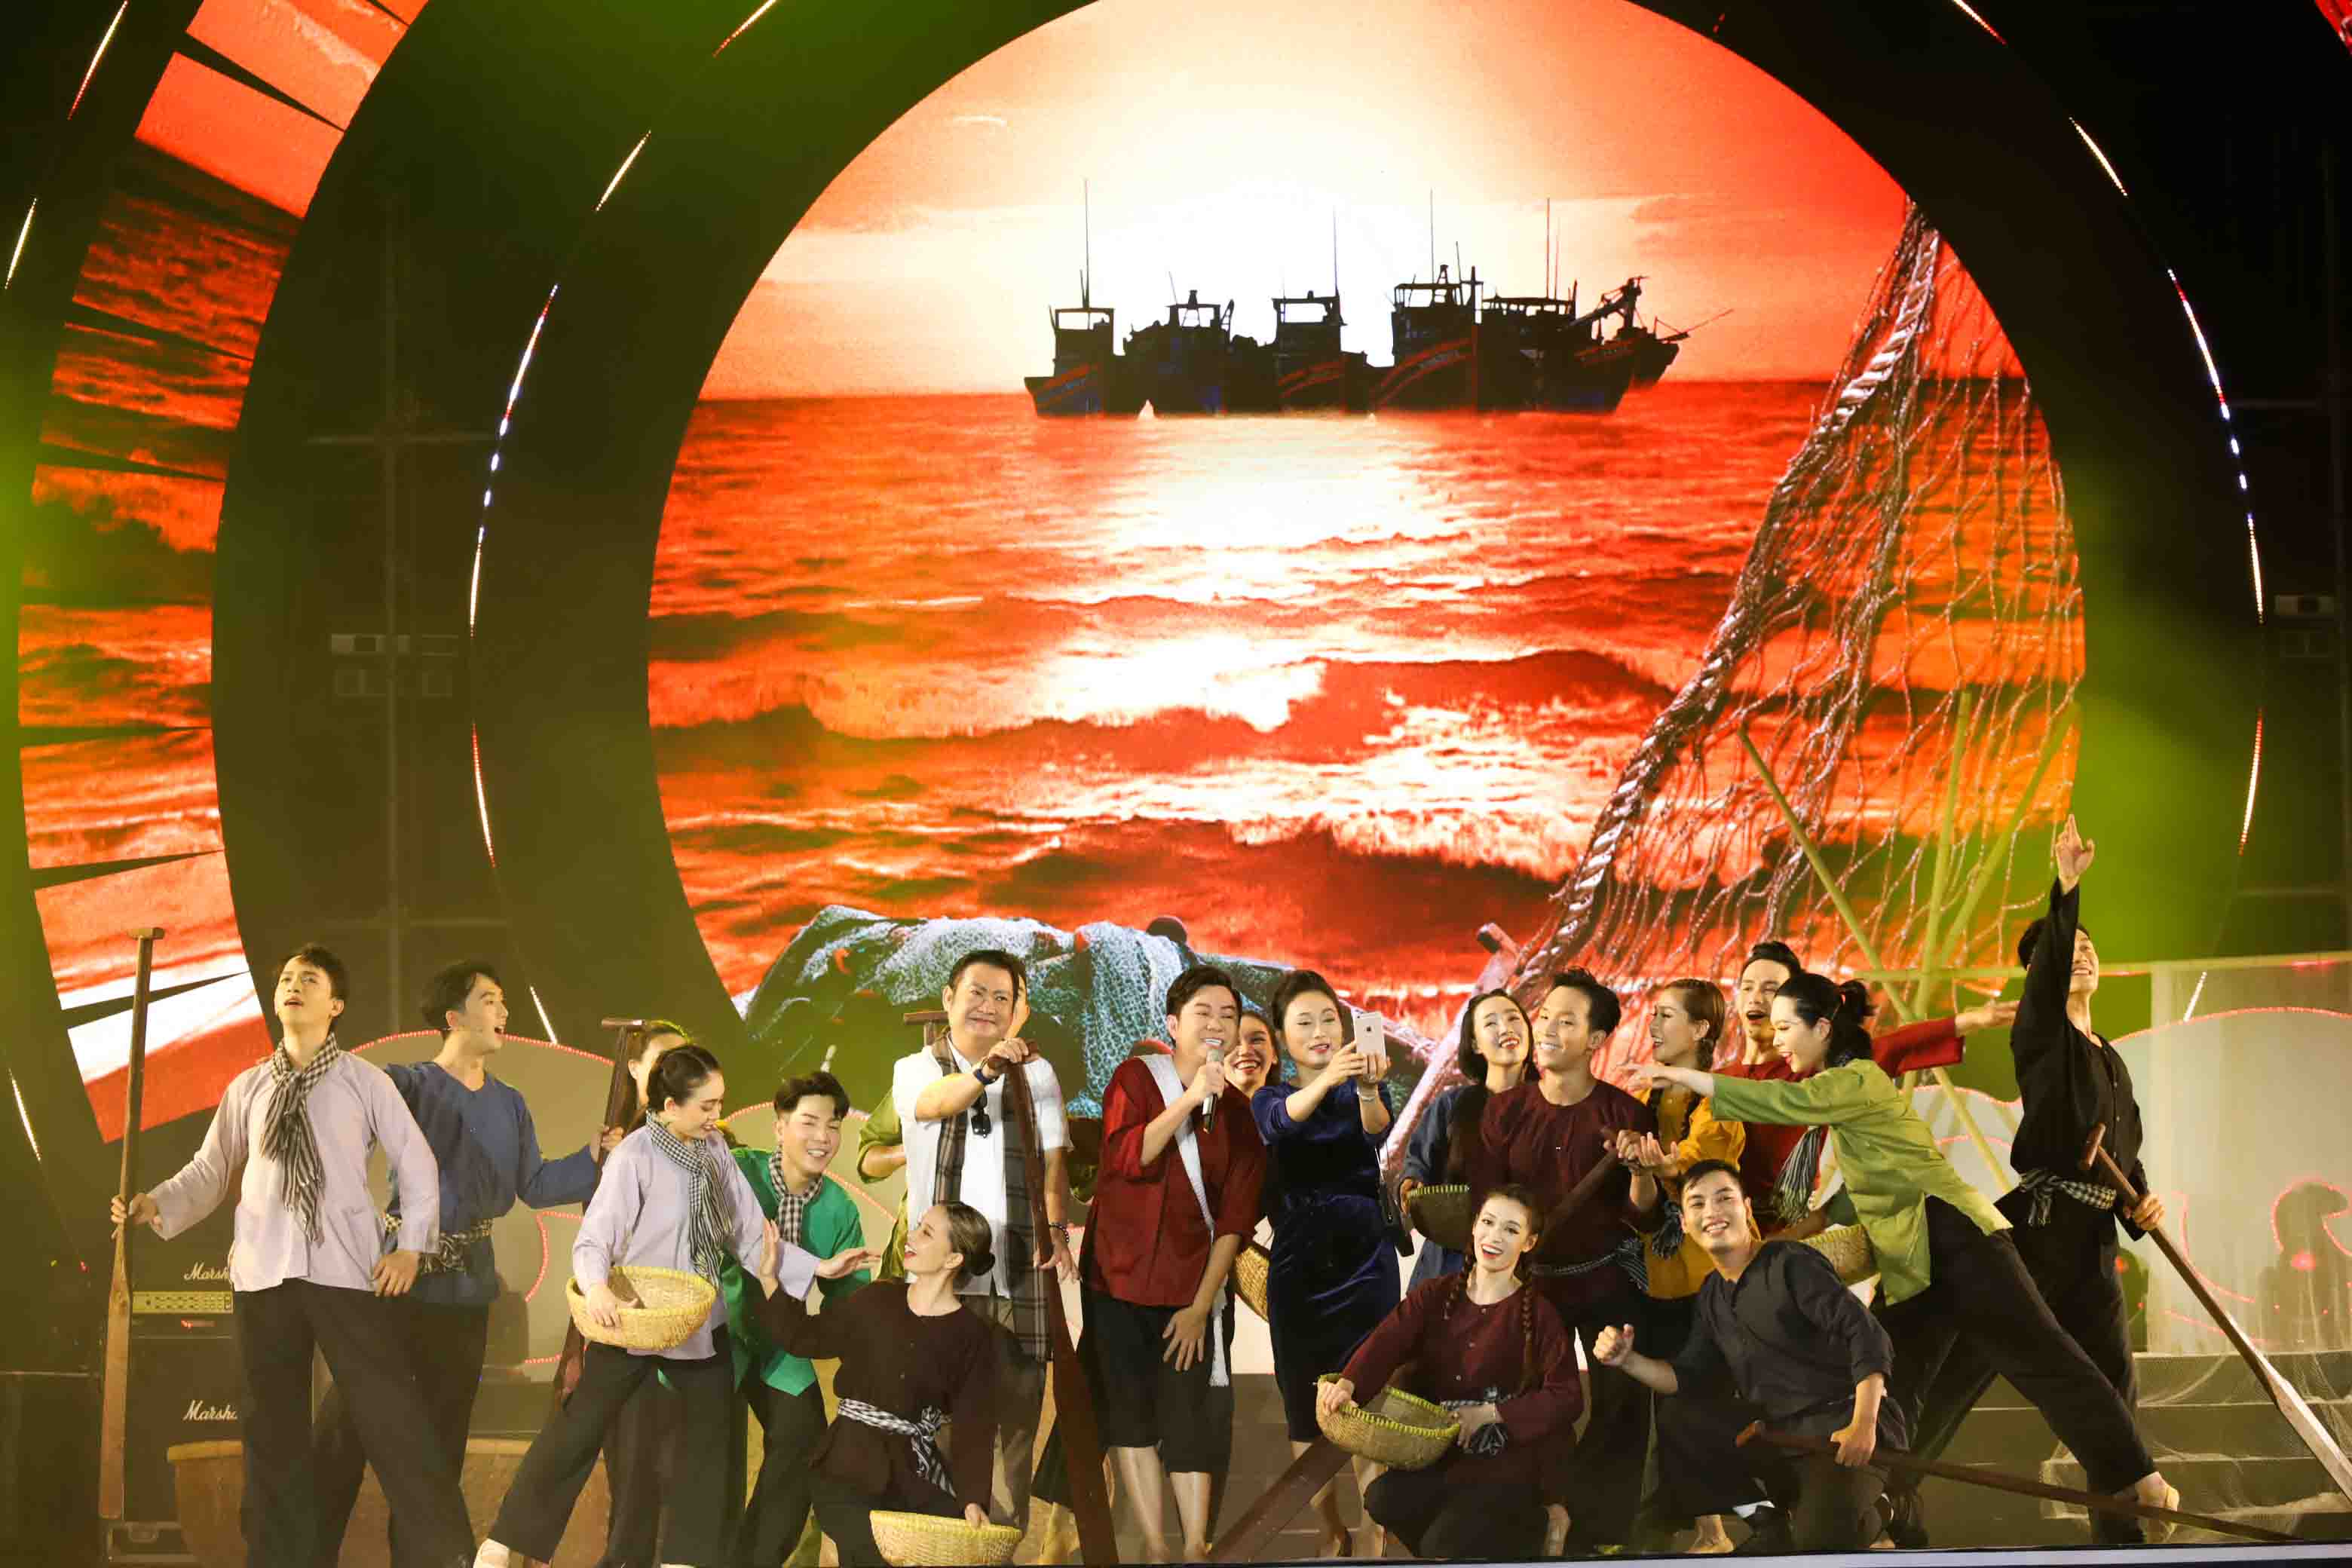 Ca sĩ Quốc Đại trong phần thể hiện ca khúc Tiếng hò ngư dân, được dàn dựng mang sắc màu dân dã, phóng khoáng của những ngư dân miền biển.